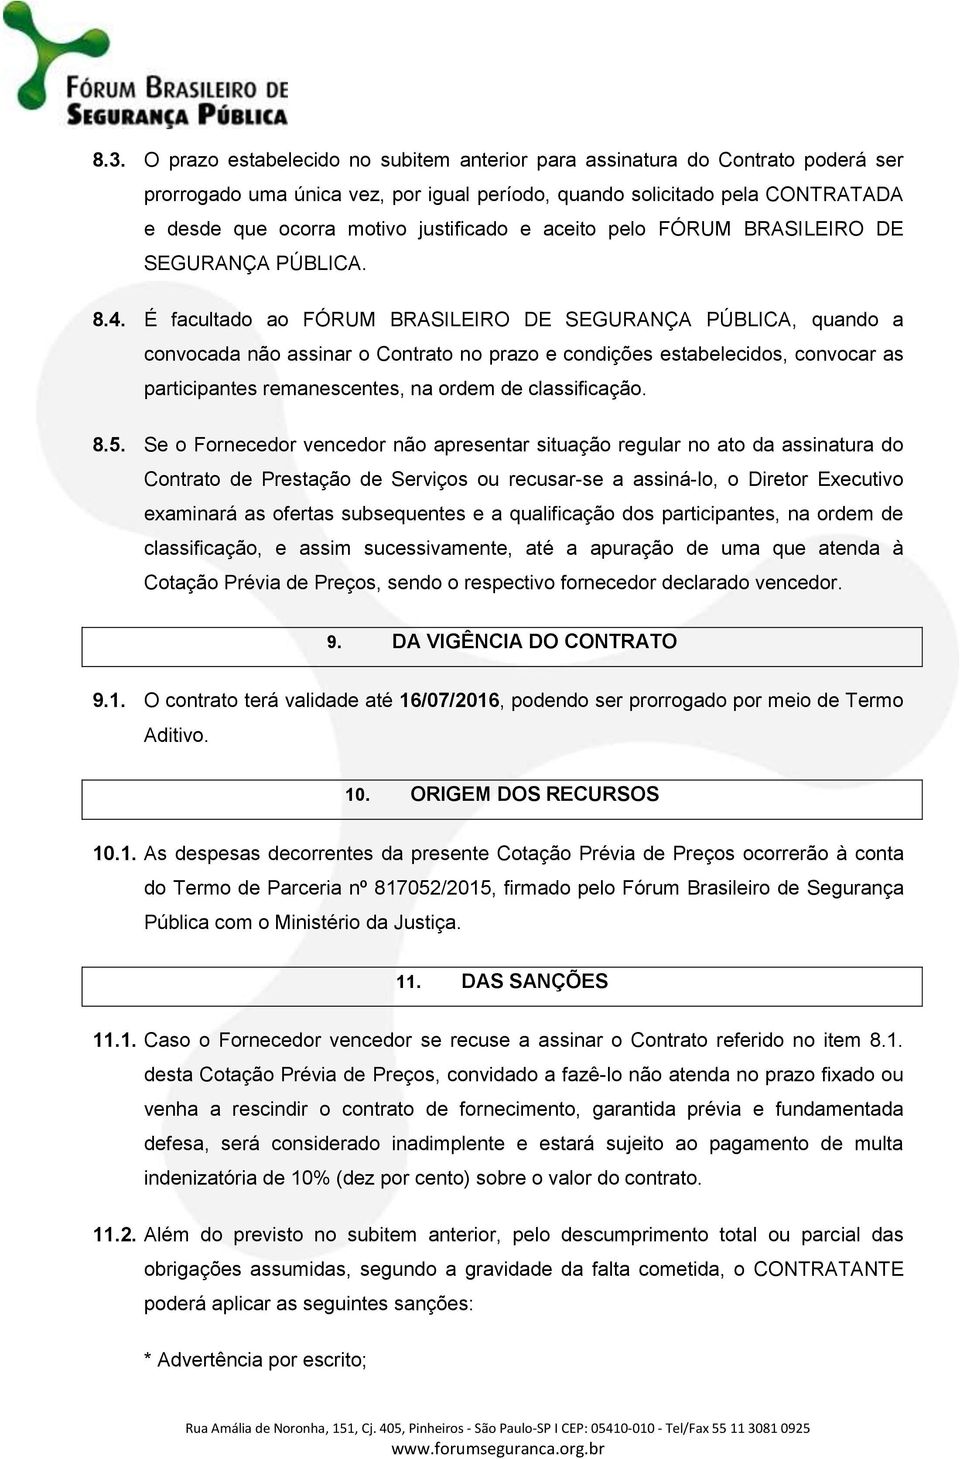 É facultado ao FÓRUM BRASILEIRO DE SEGURANÇA PÚBLICA, quando a convocada não assinar o Contrato no prazo e condições estabelecidos, convocar as participantes remanescentes, na ordem de classificação.